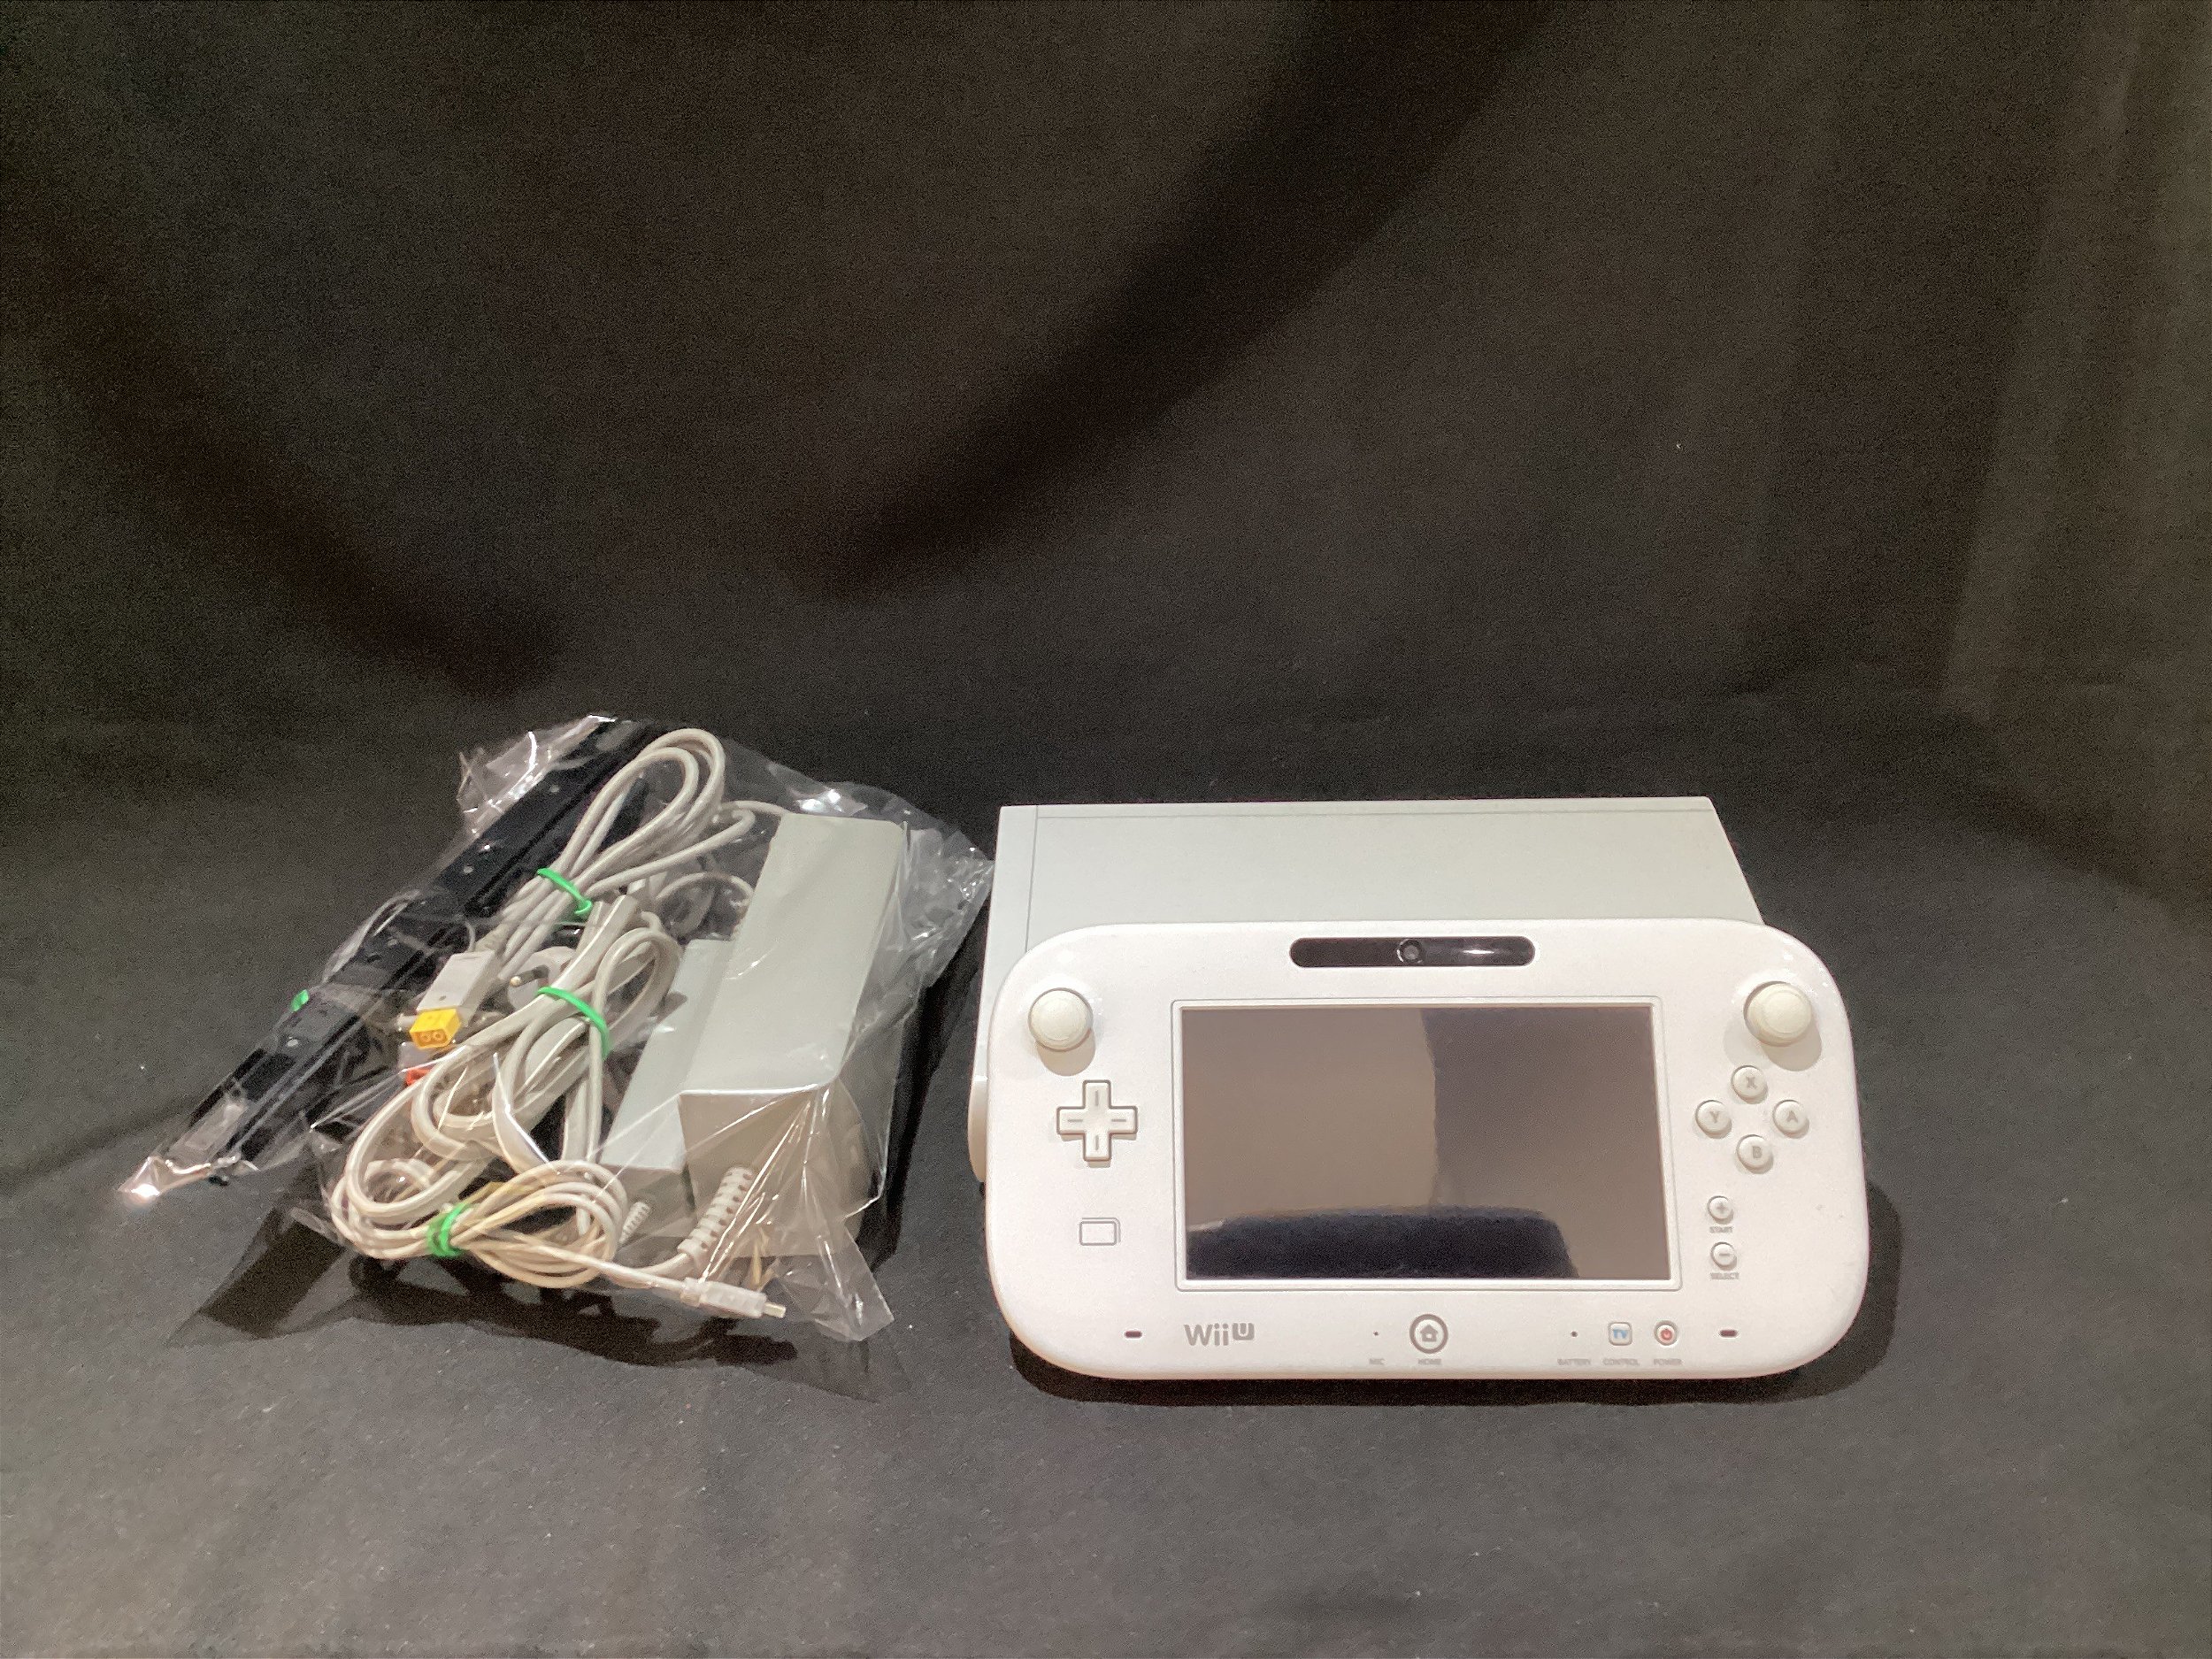 Console Nintendo Wii Branco - Nintendo - Gameteczone a melhor loja